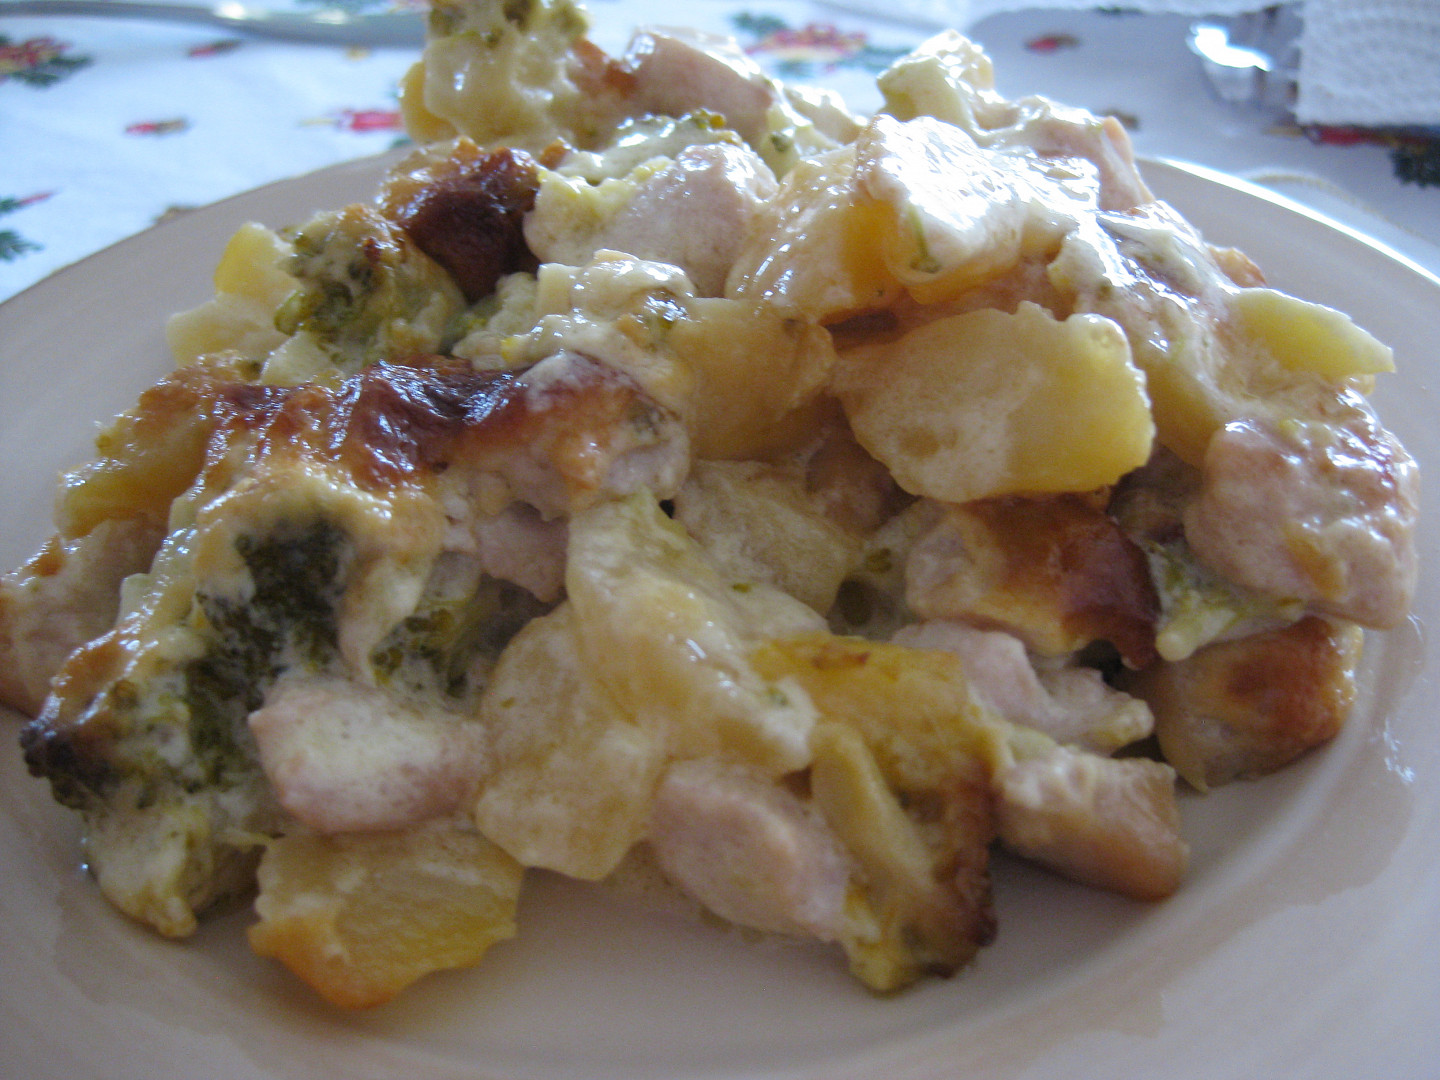 Krůtí a kuřecí prsa zapečená s brambory, brokolicí a smetanou